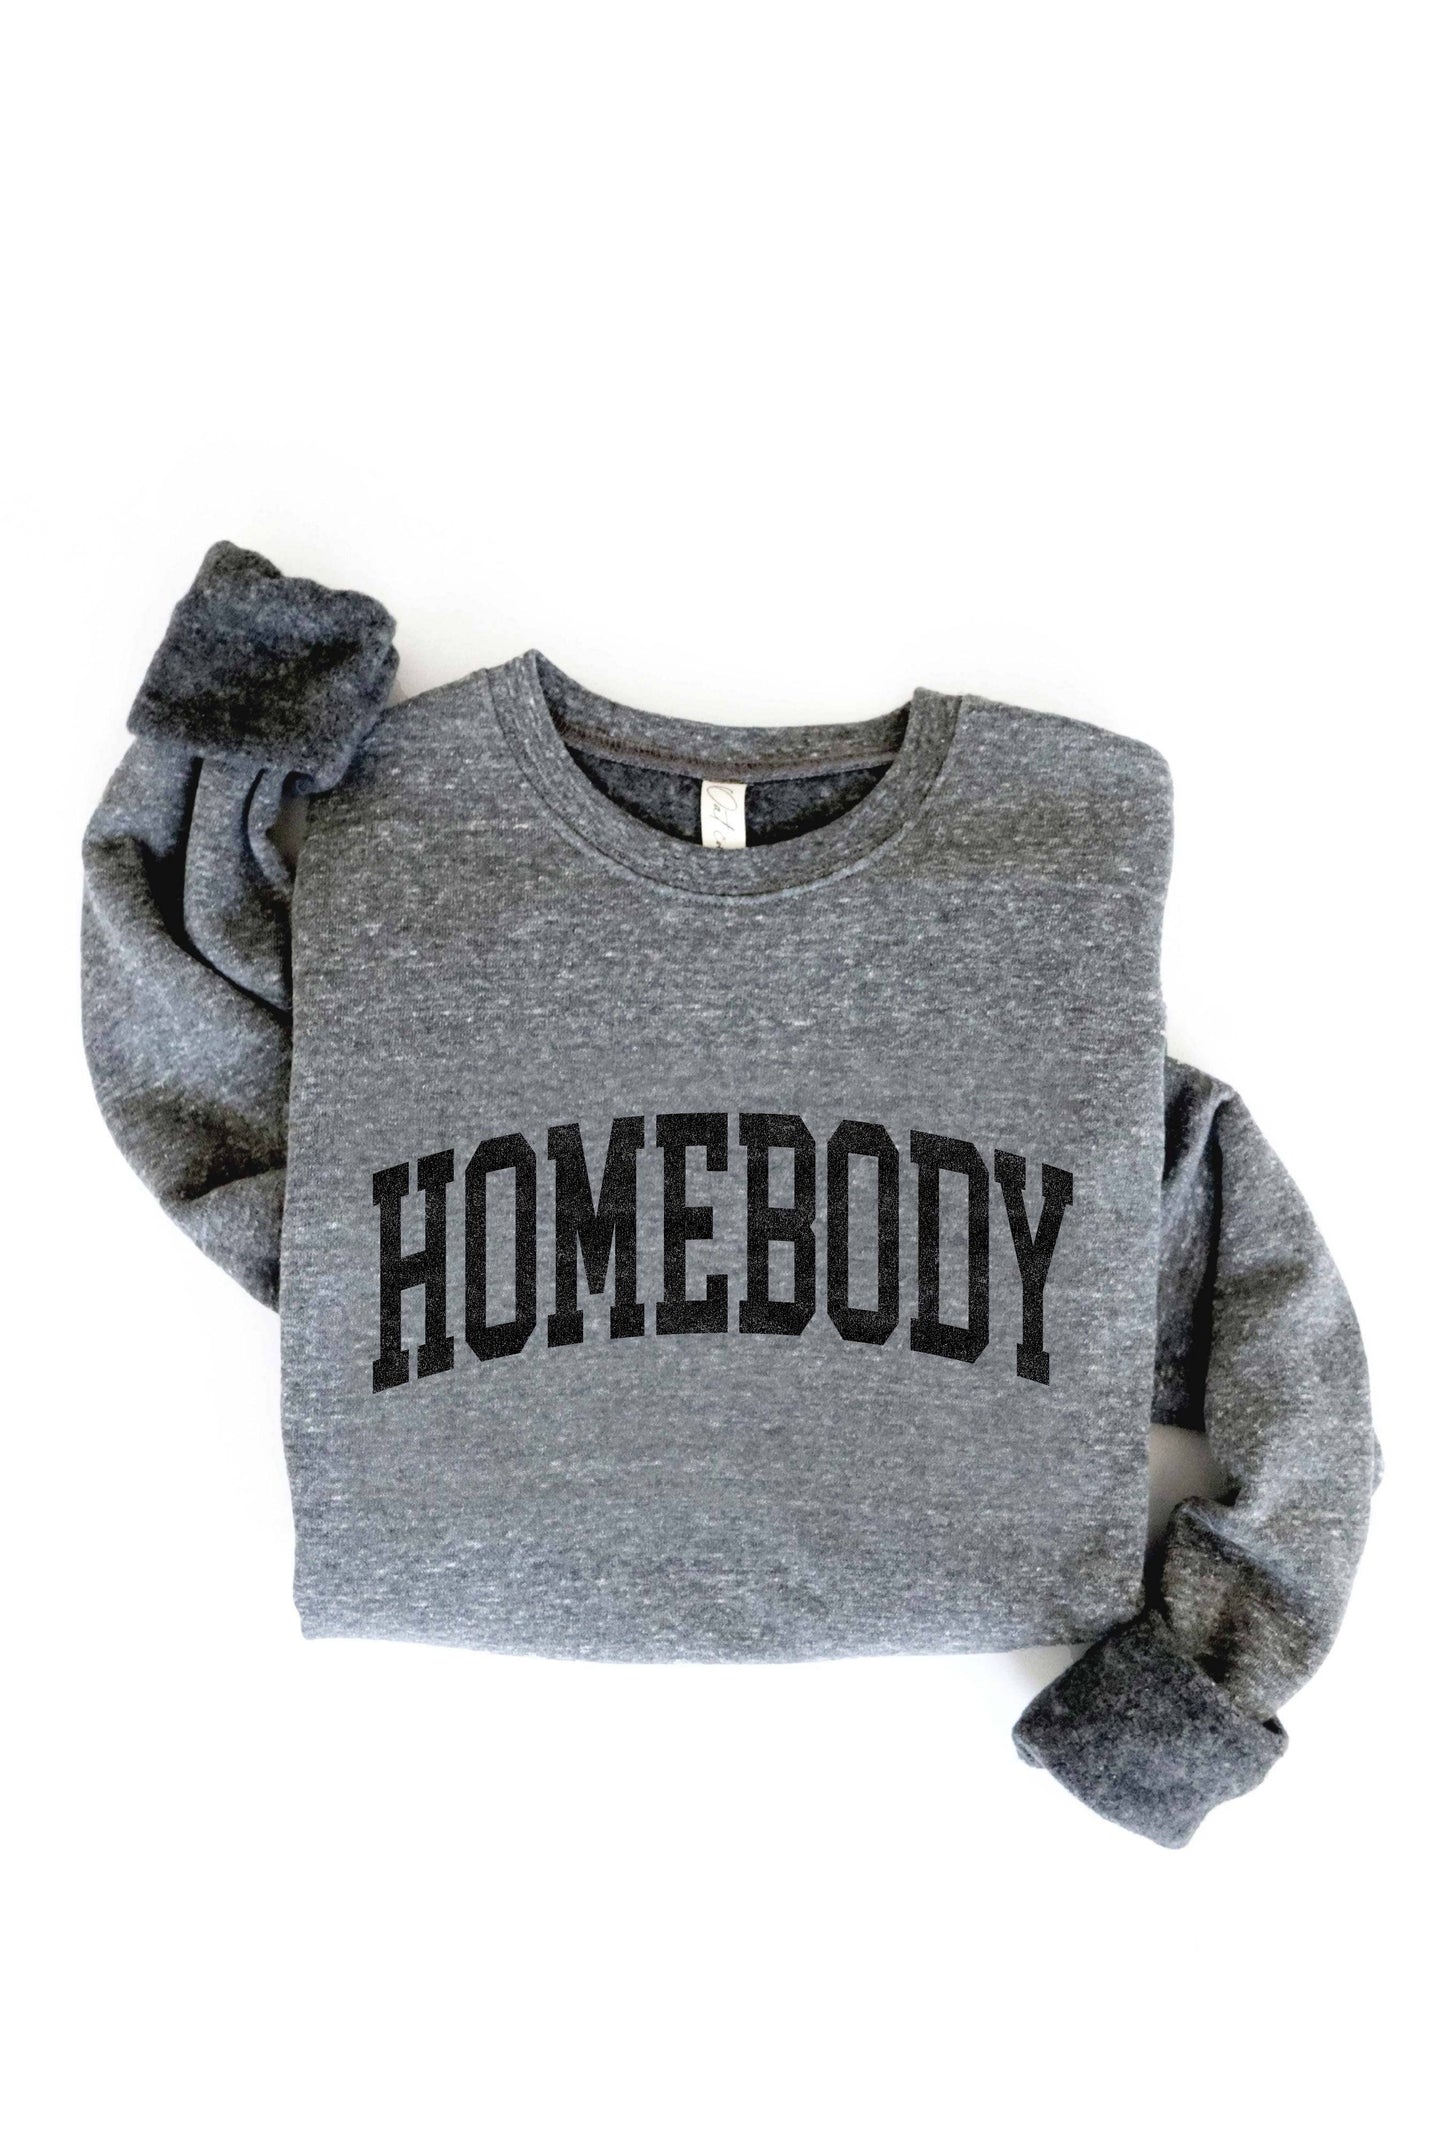 HOMEBODY Graphic Sweatshirt…medium